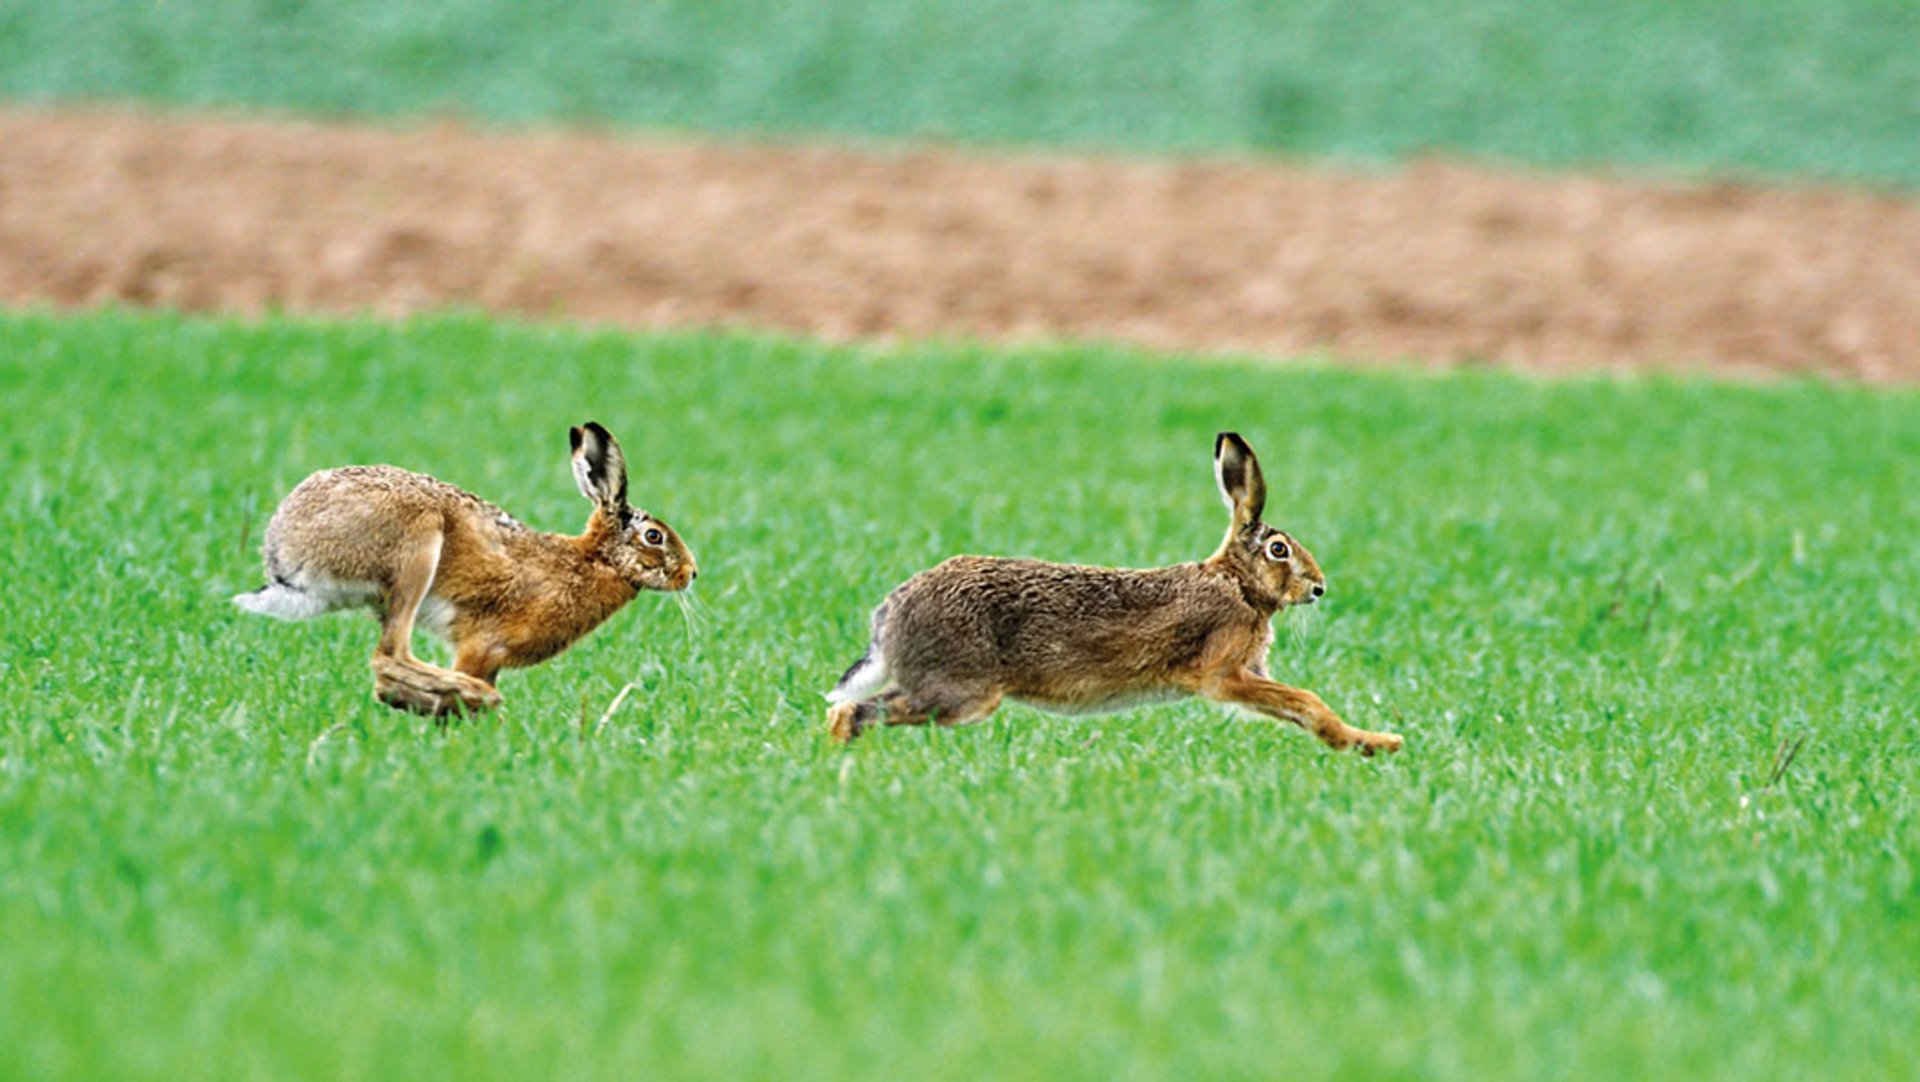 Ein Hase, Niederwild, läuft schnell über eine grüne Wiese, sein Fell ist braun bis hellbraun und er hat schwarz-weiße Ohren.